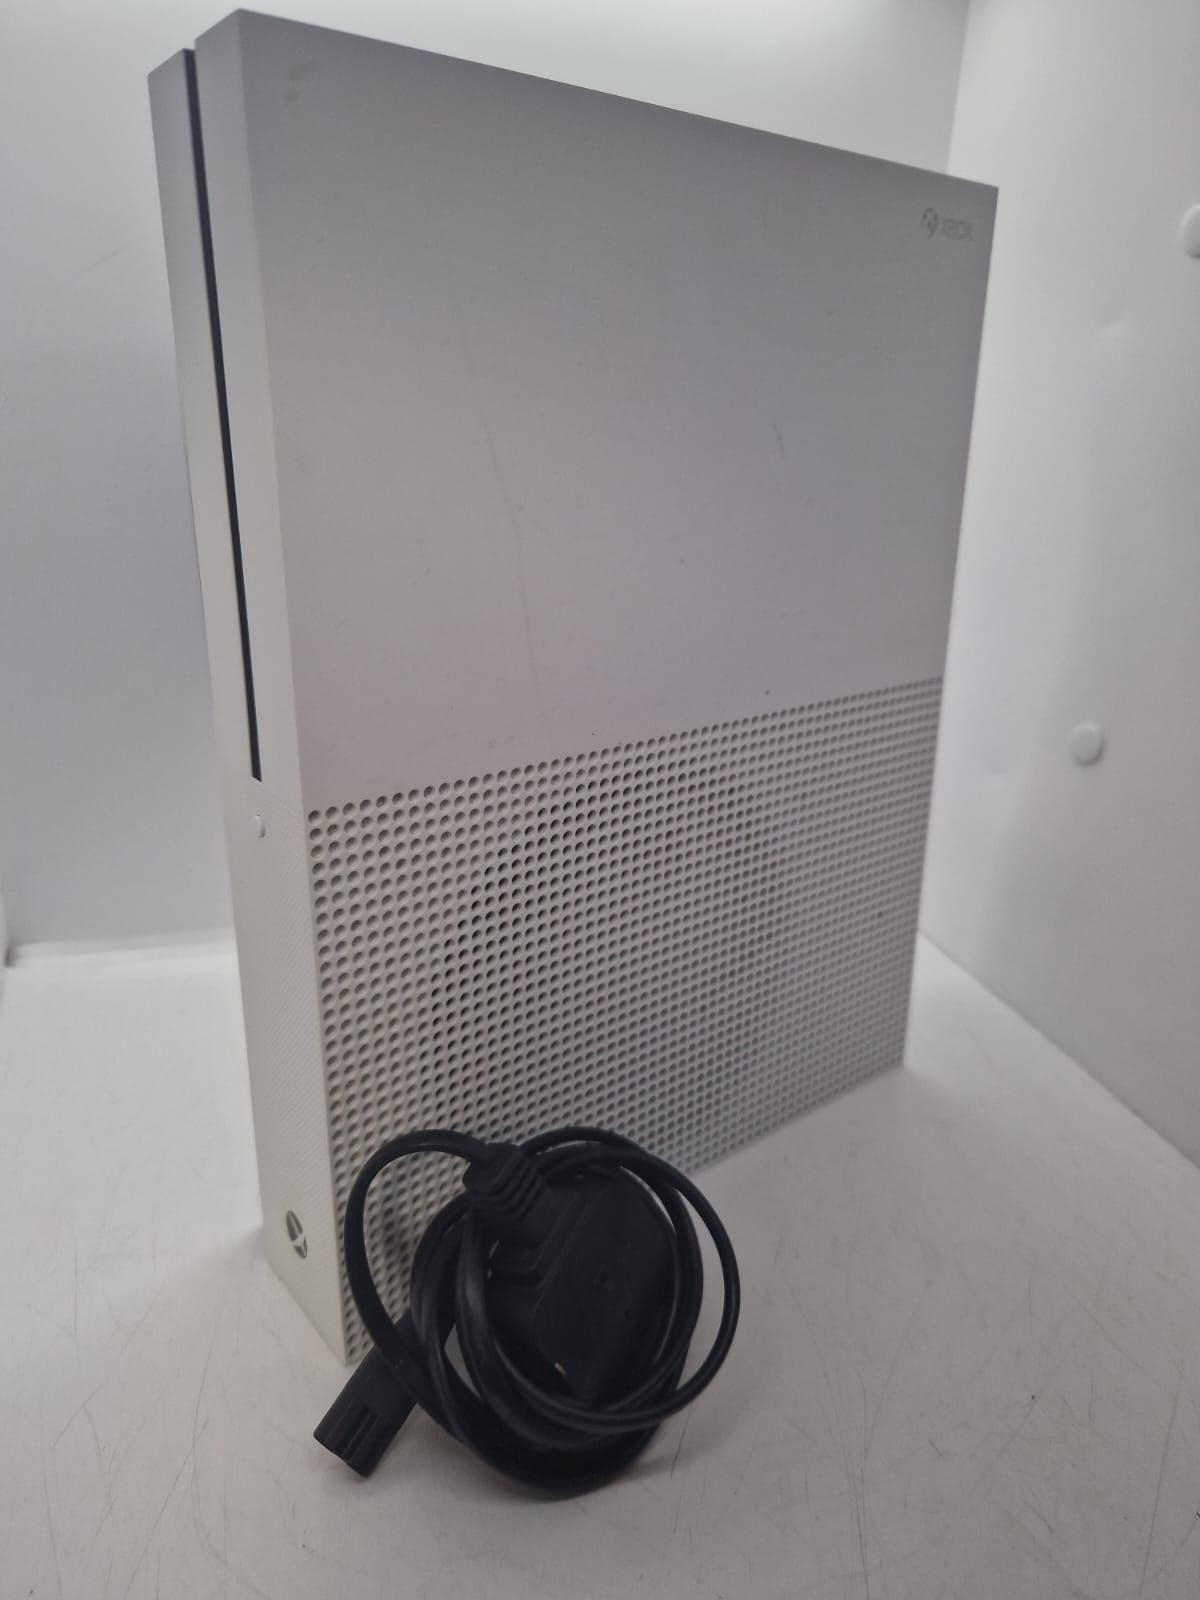 Microsoft Xbox One S 500GB Home Console - White No Controller/box